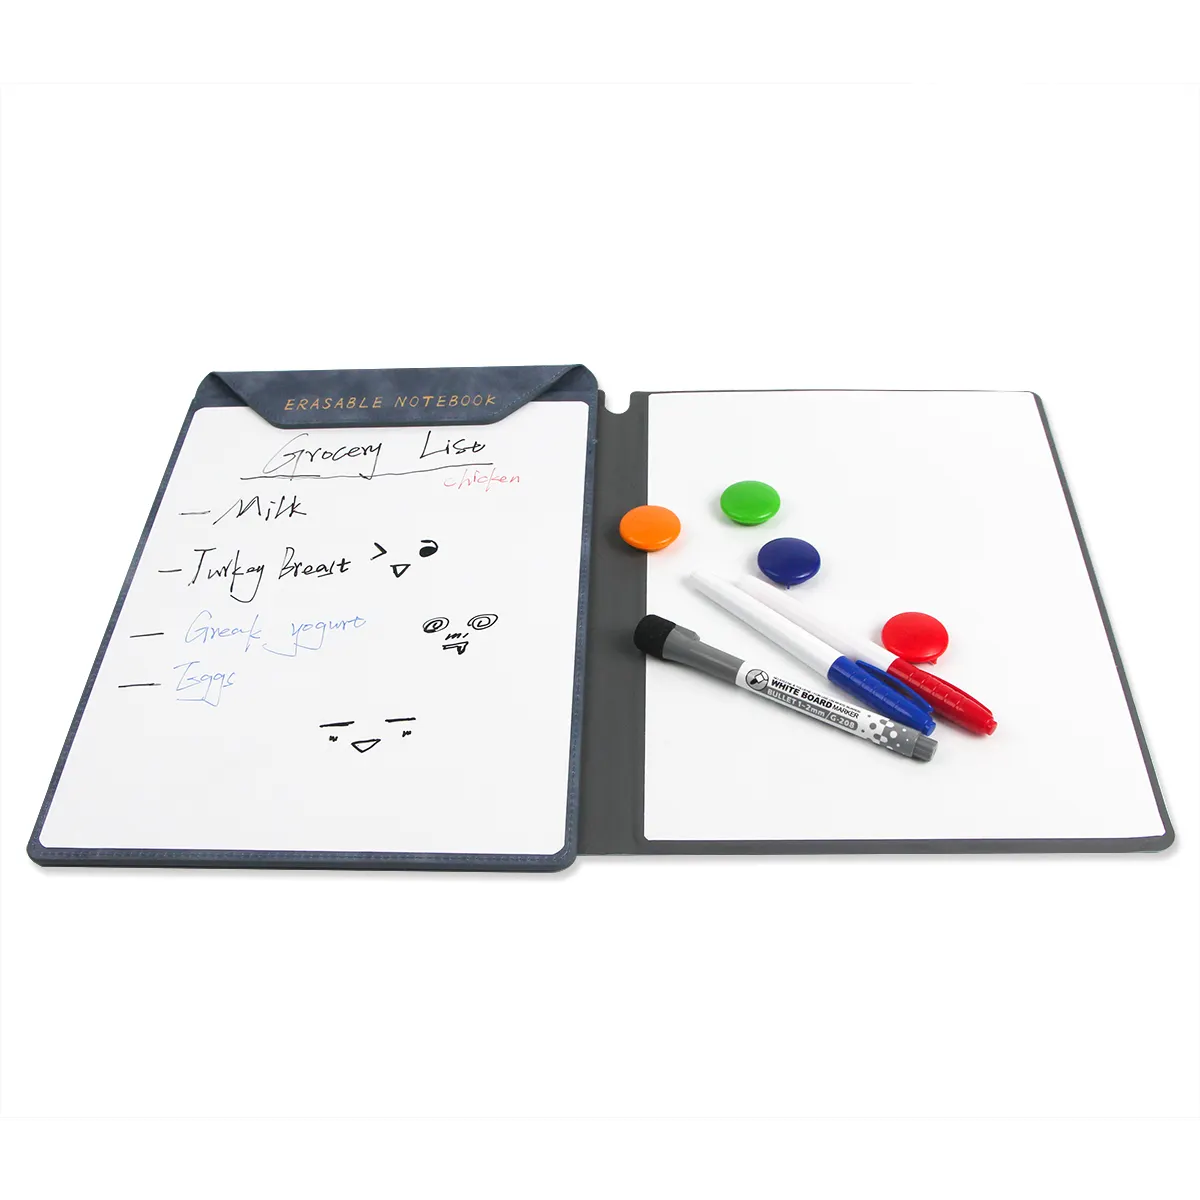 بسعر الجملة دفتر A4 ذكي قابل للمسح مع قلم قابل للمسح قابل لإعادة الاستخدام مغناطيس ورق أليف ملزم PU لوح مخطط